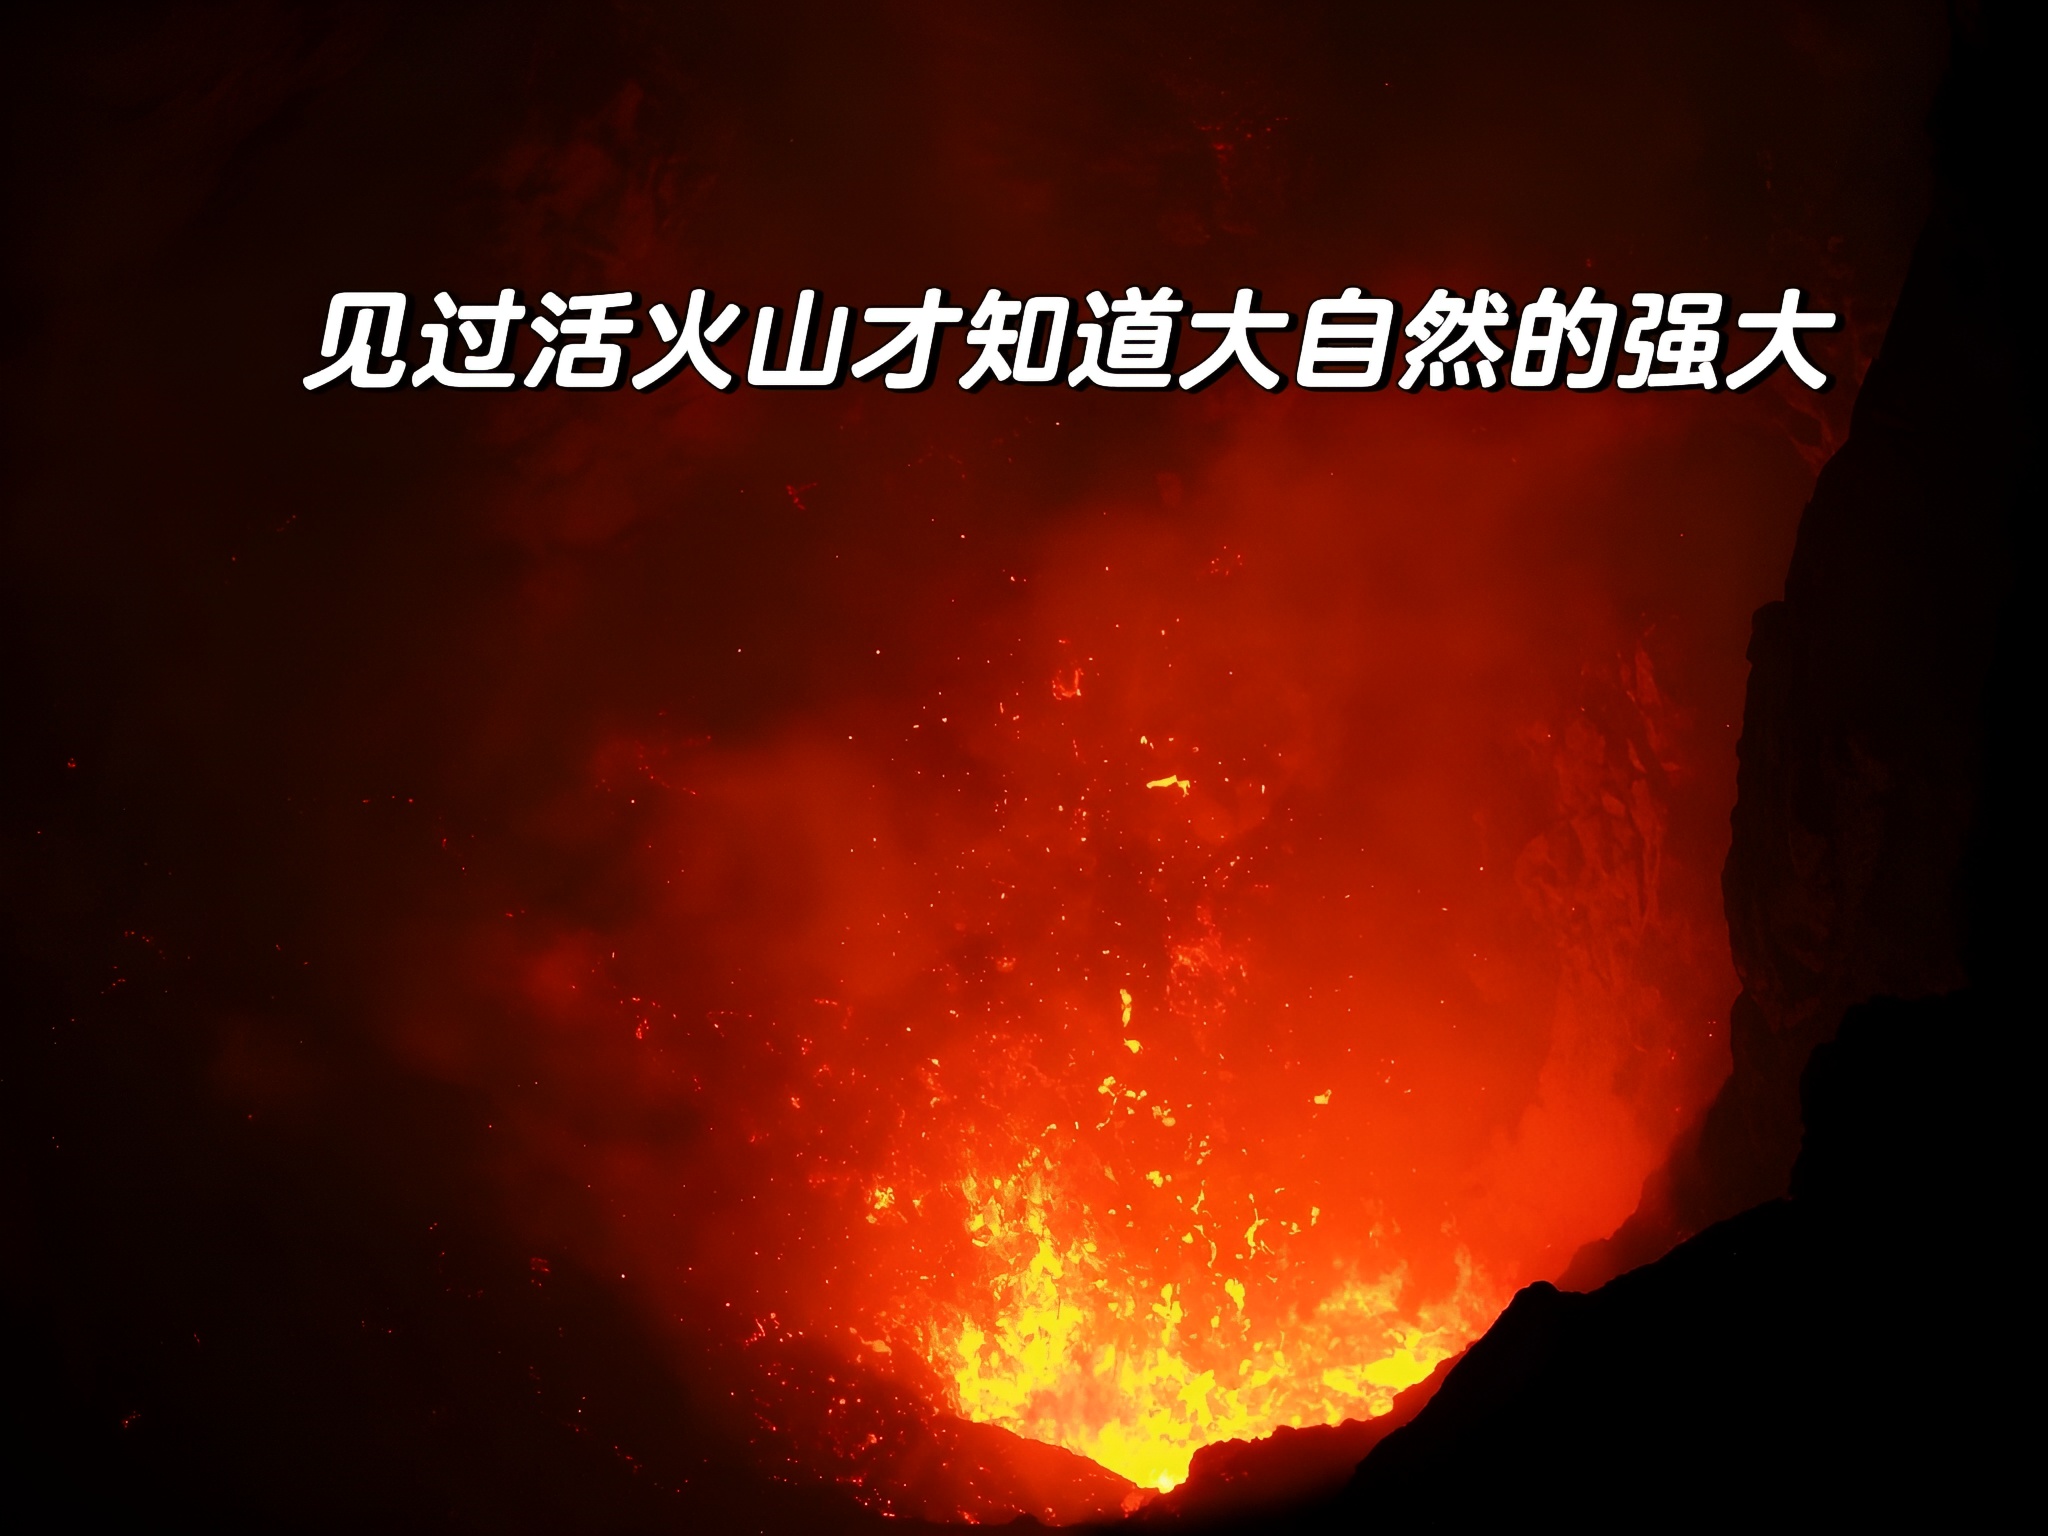 位于瓦鲁阿图坦纳岛（vanuatu tanna island） 有这么一座火火山叫 Mount Ya